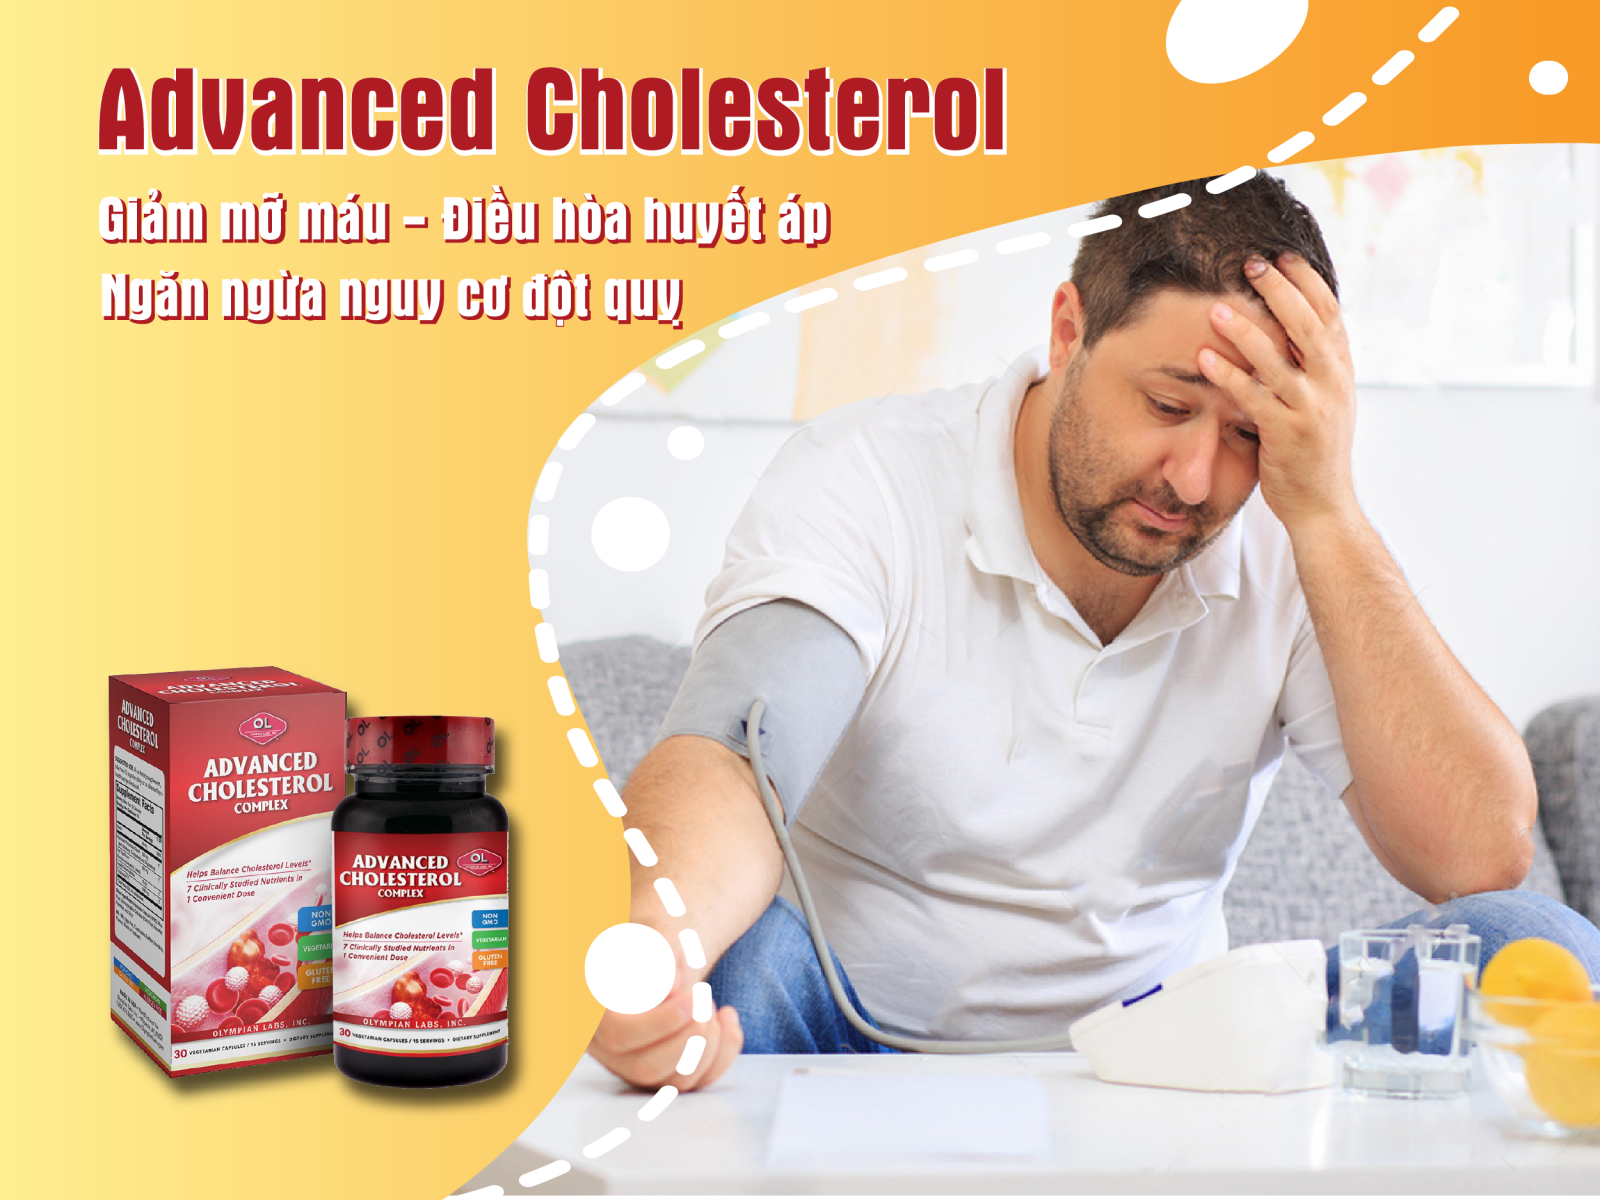 Advanced Cholesterol Complext - Sự lựa chọn hoàn hảo cho người bệnh mỡ máu cao